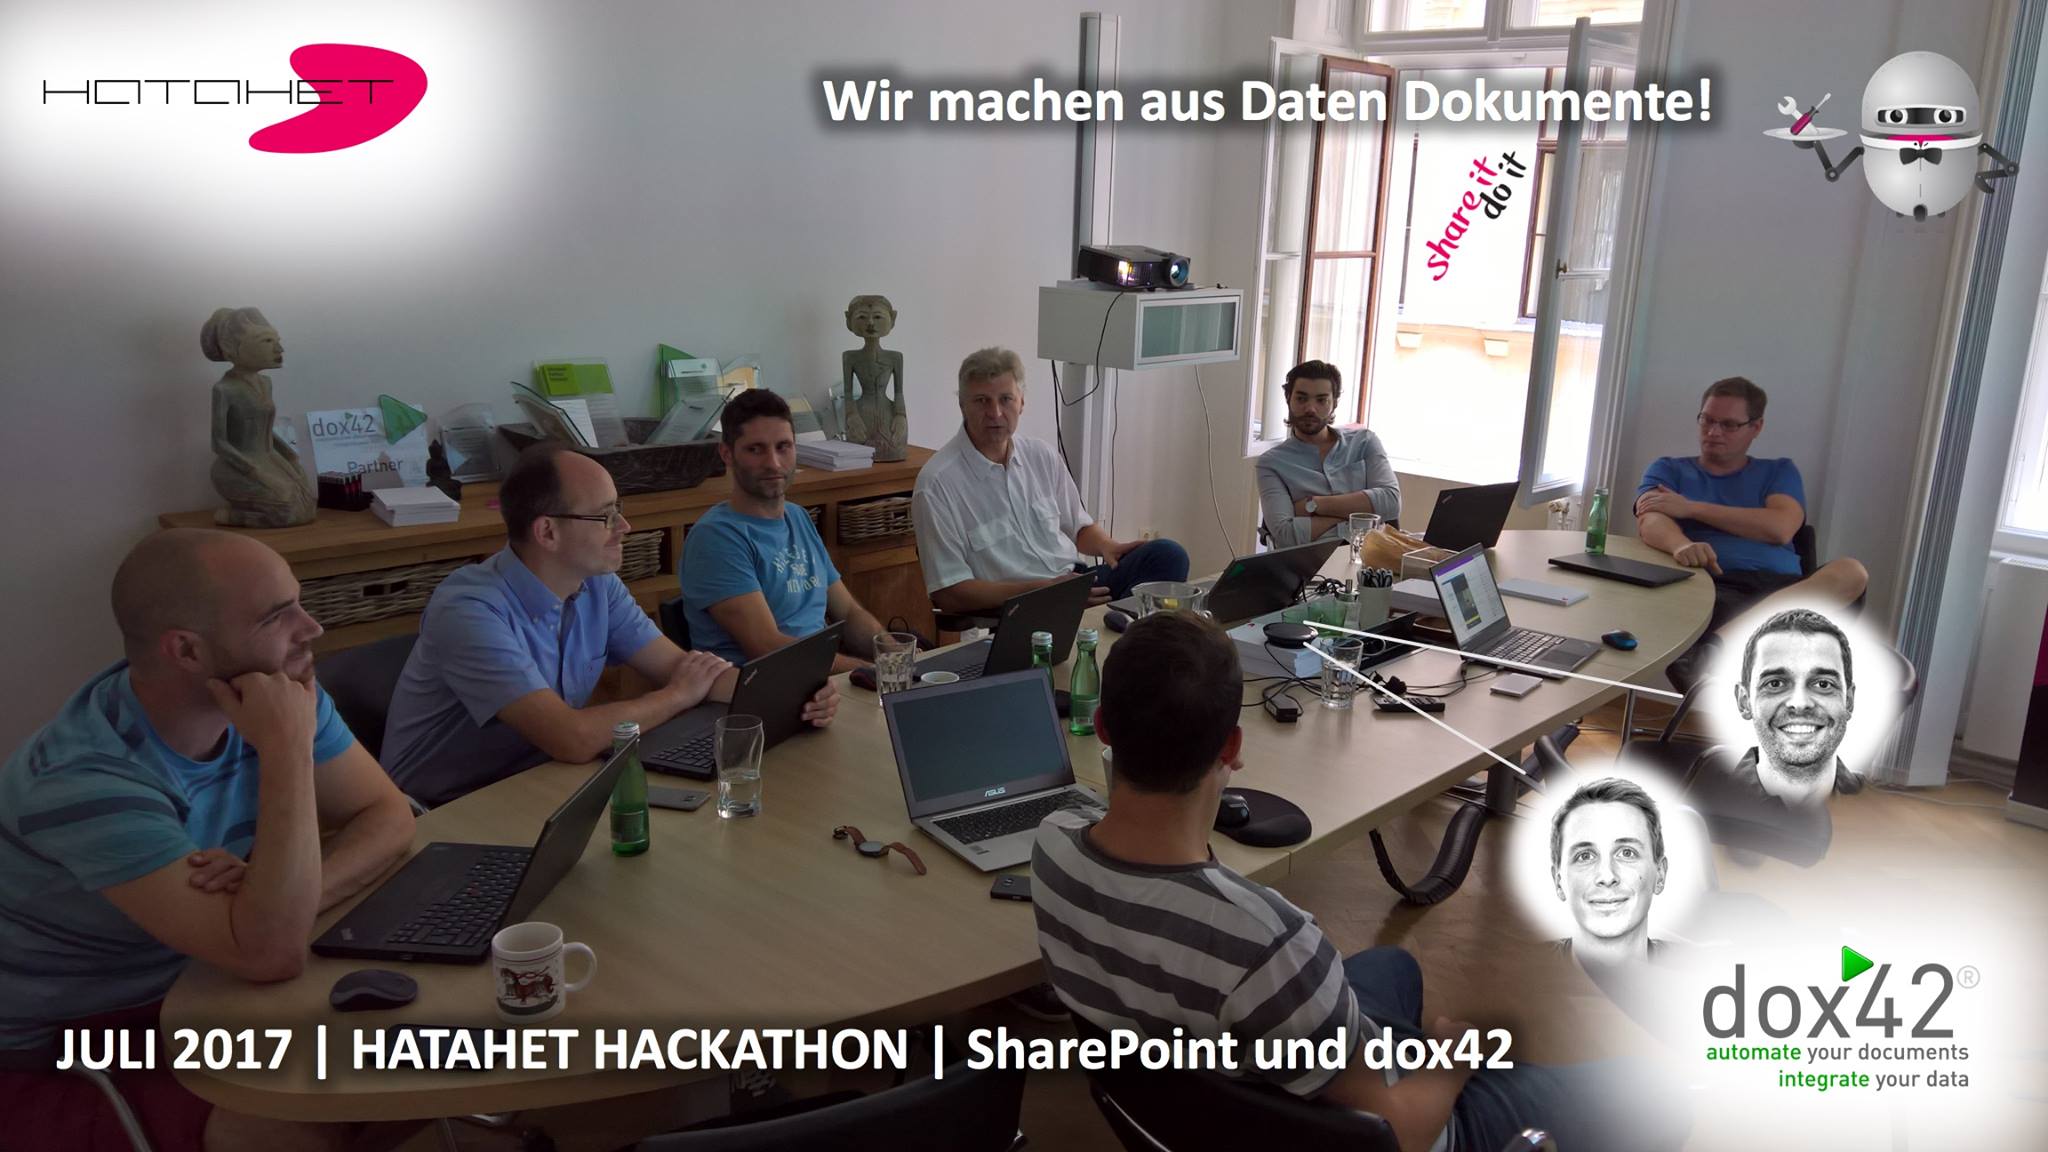 Wir machen aus Daten Dokumente - dox42 am Hatahet Hackathon